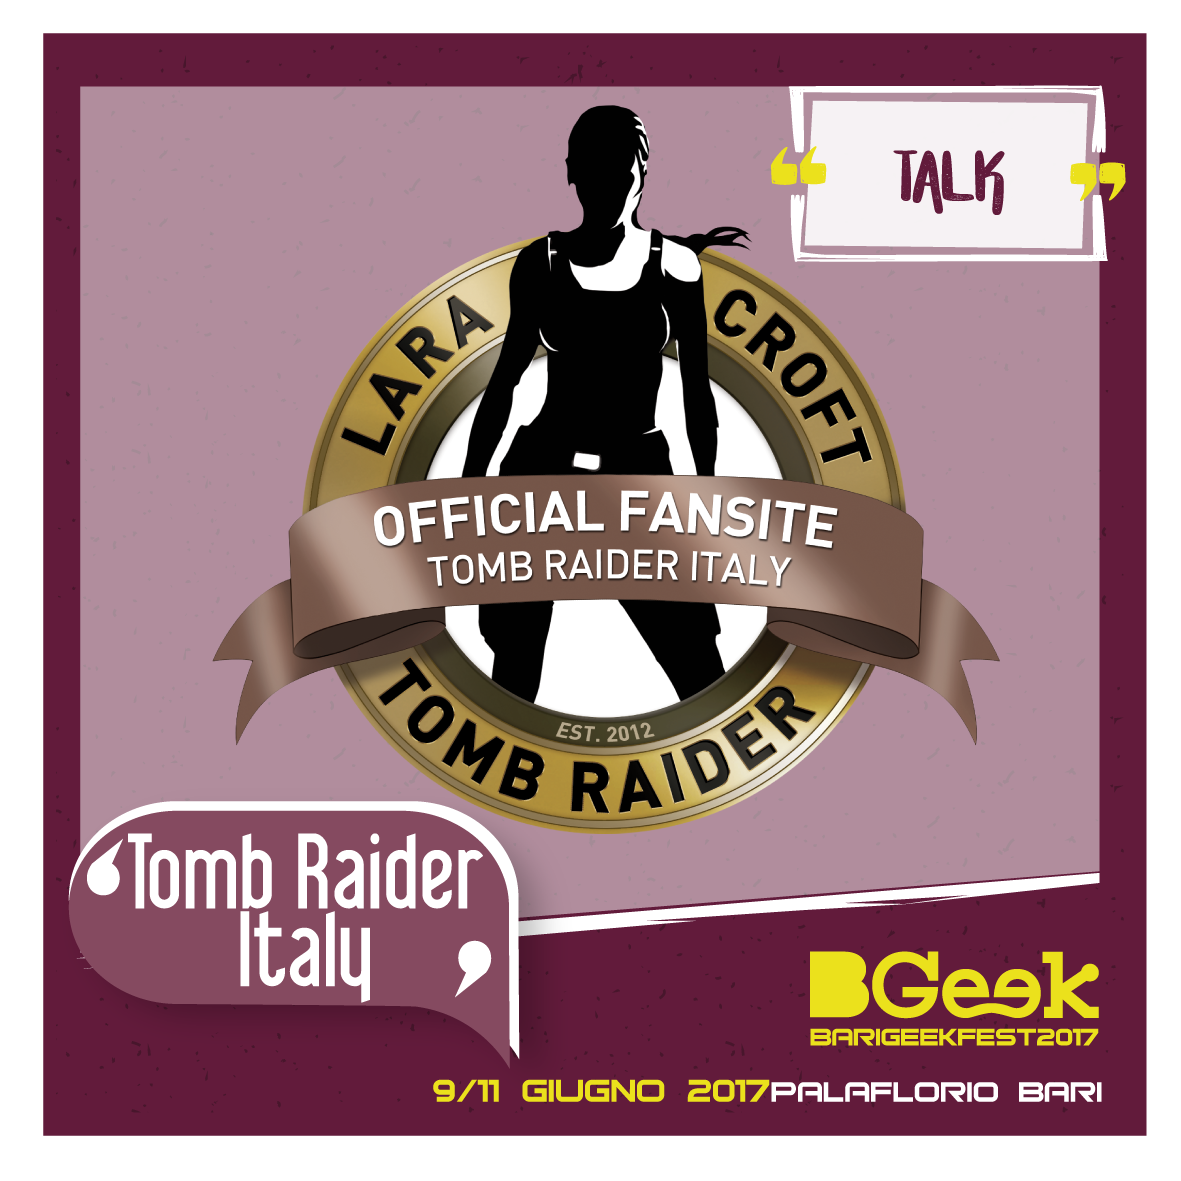 Talk: Tomb Raider Italy – dalle origini di Lara Croft alla sua evoluzione